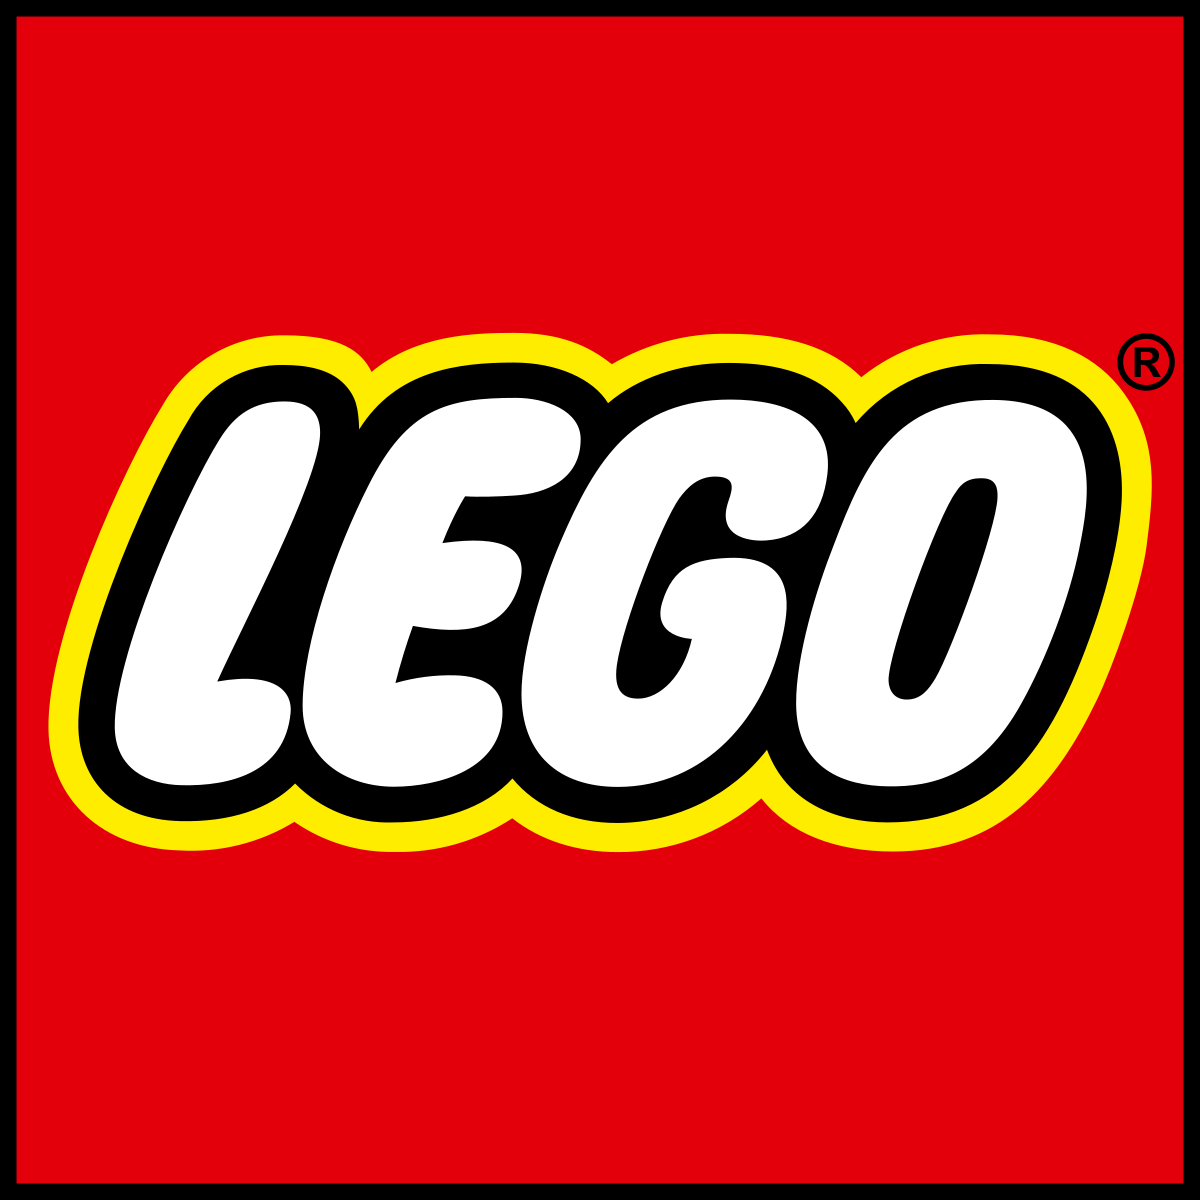 Đồ chơi Lego thương hiệu toàn cầu